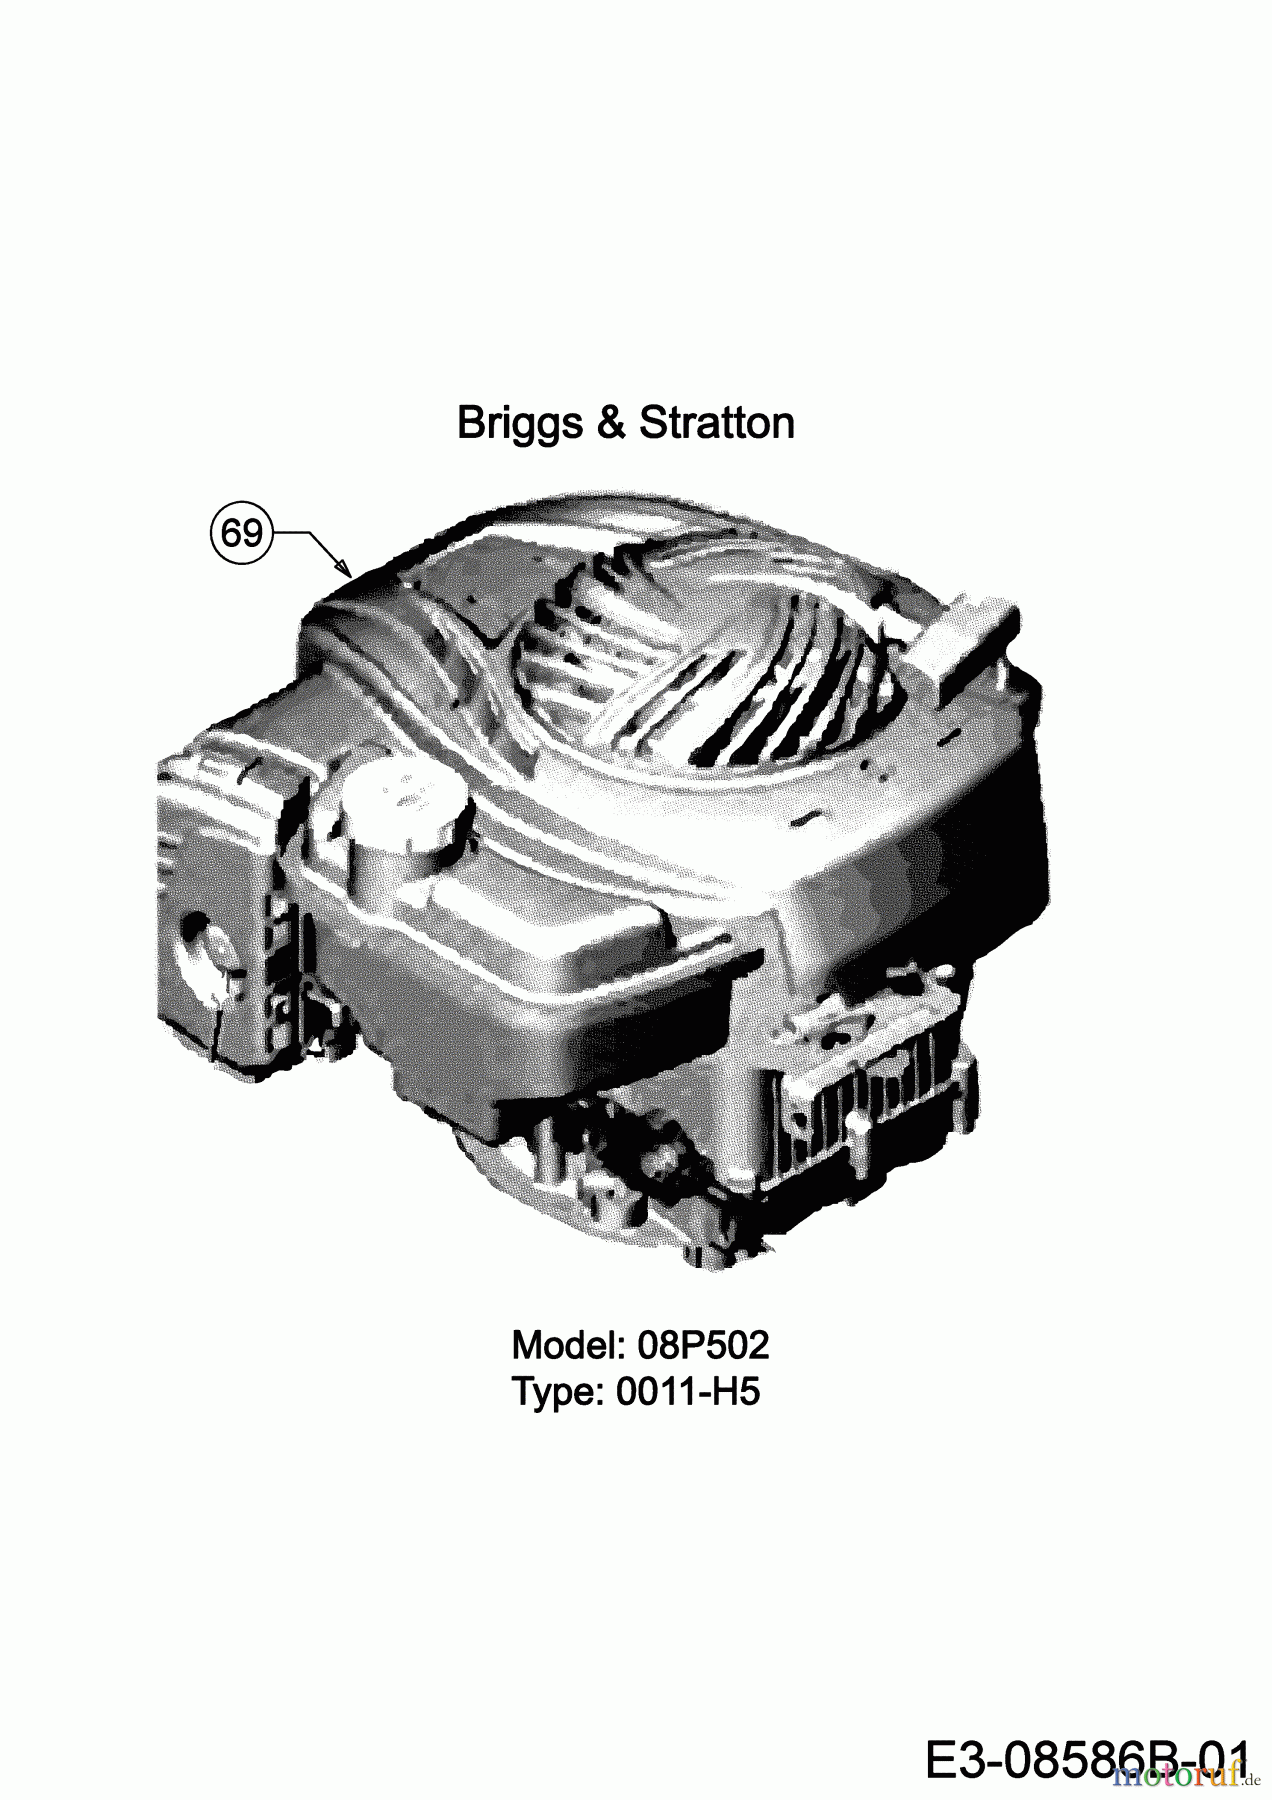  Black-Line Petrol mower BL 3546 11B-TE5B683 (2019) Engine Briggs & Stratton